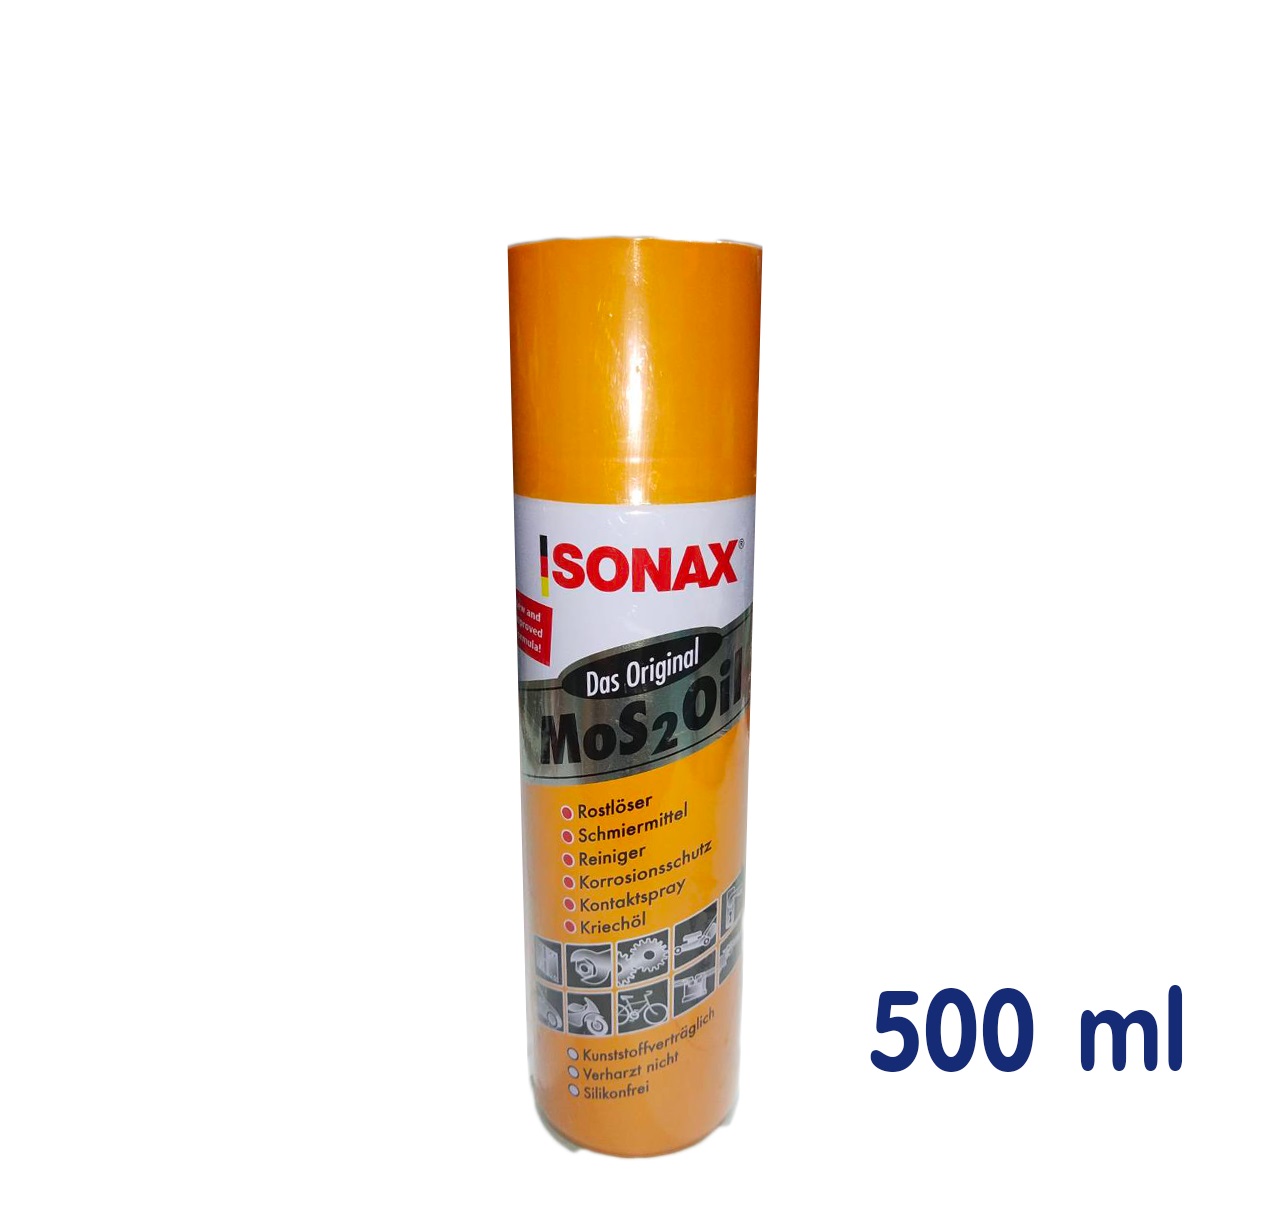 รูปภาพเพิ่มเติมของ น้ำมันหล่อลื่น โซแน็กซ์ Sonax spray 200 มล 400 มล 500 มล โซแน็ก น้ำมันอเนกประสงค์ น้ำมันโซเน็ก สเปรย์อเนกประสงค์ ครอบจักรวาล สเปรย์ Sonex / M.K Tool